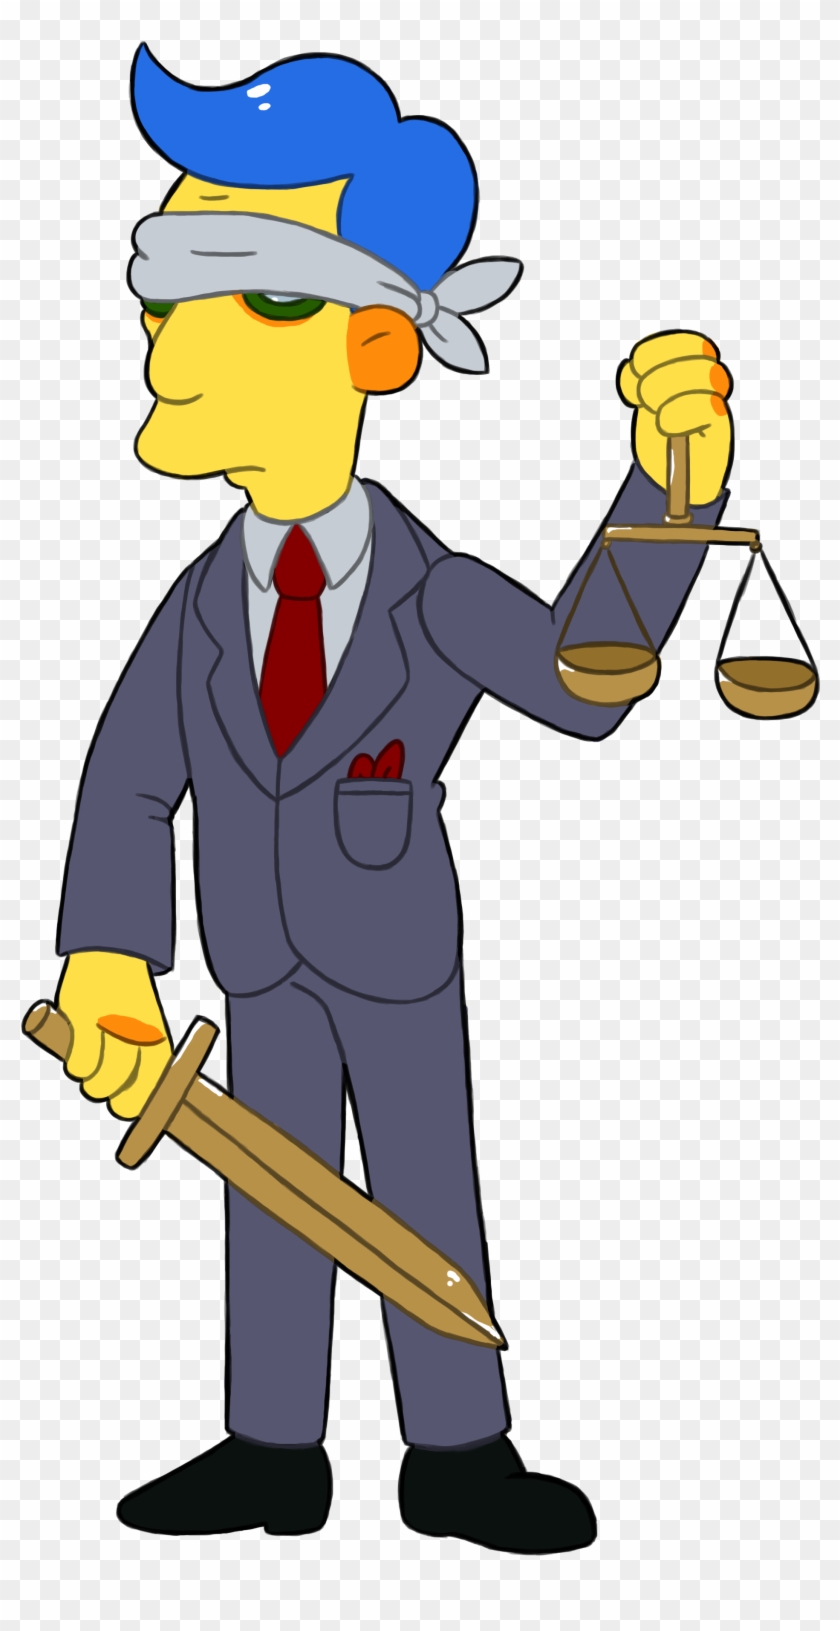 Blue Haired Lawyer Sticker By Garrett-strangelove - The Simpsons #53772